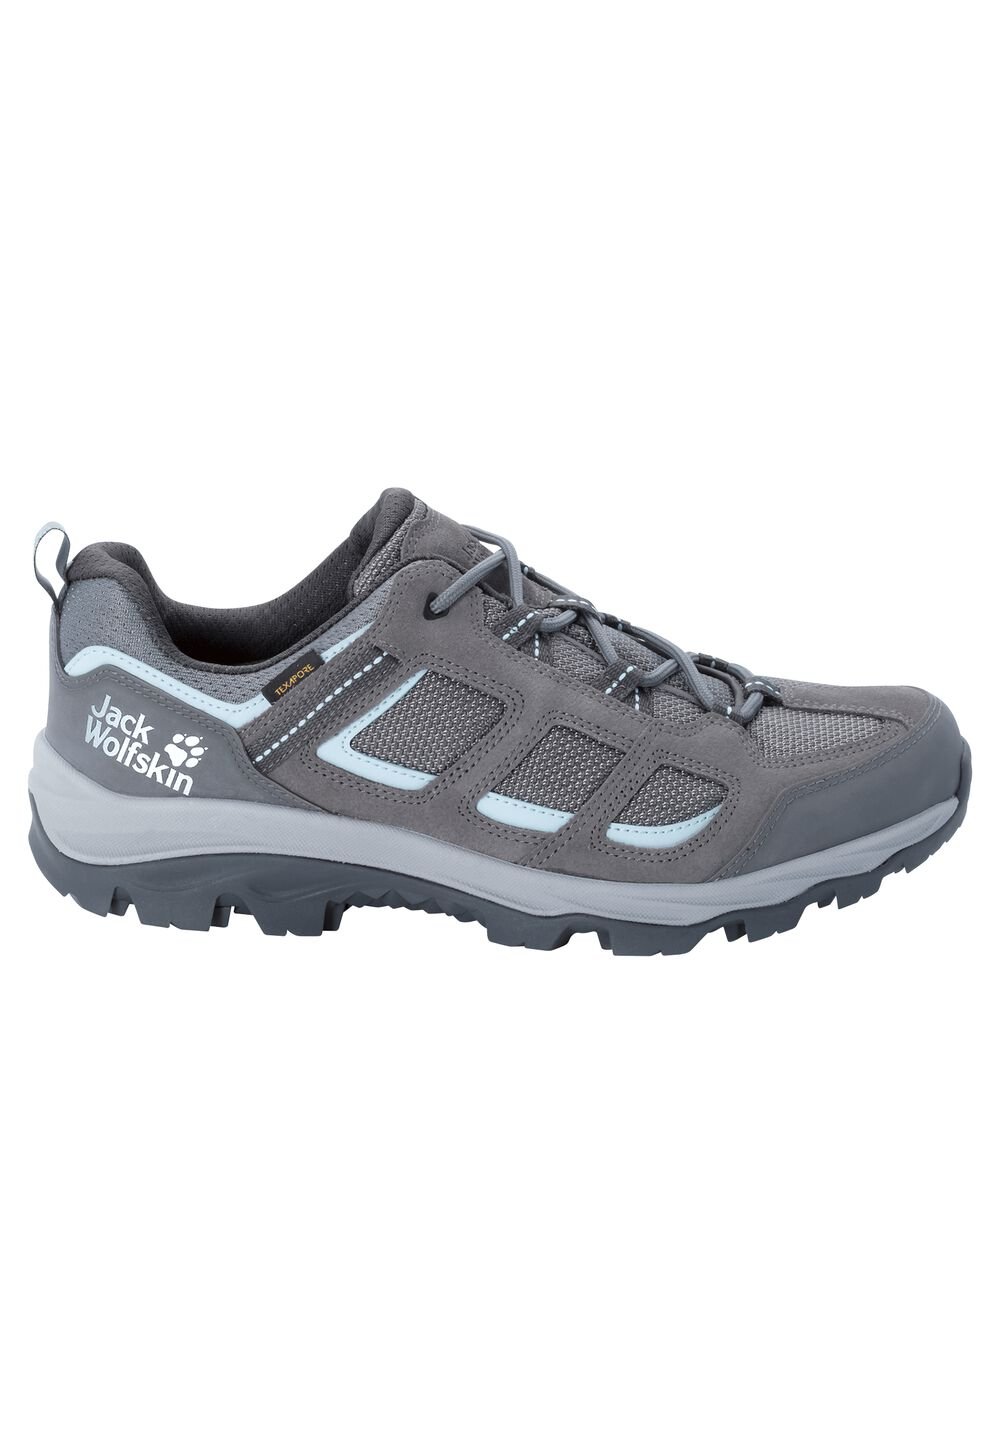 Chaussures de randonnée imperméables femmes Vojo 3 Texapore Low Women 7,5 gris tarmac grey / light b